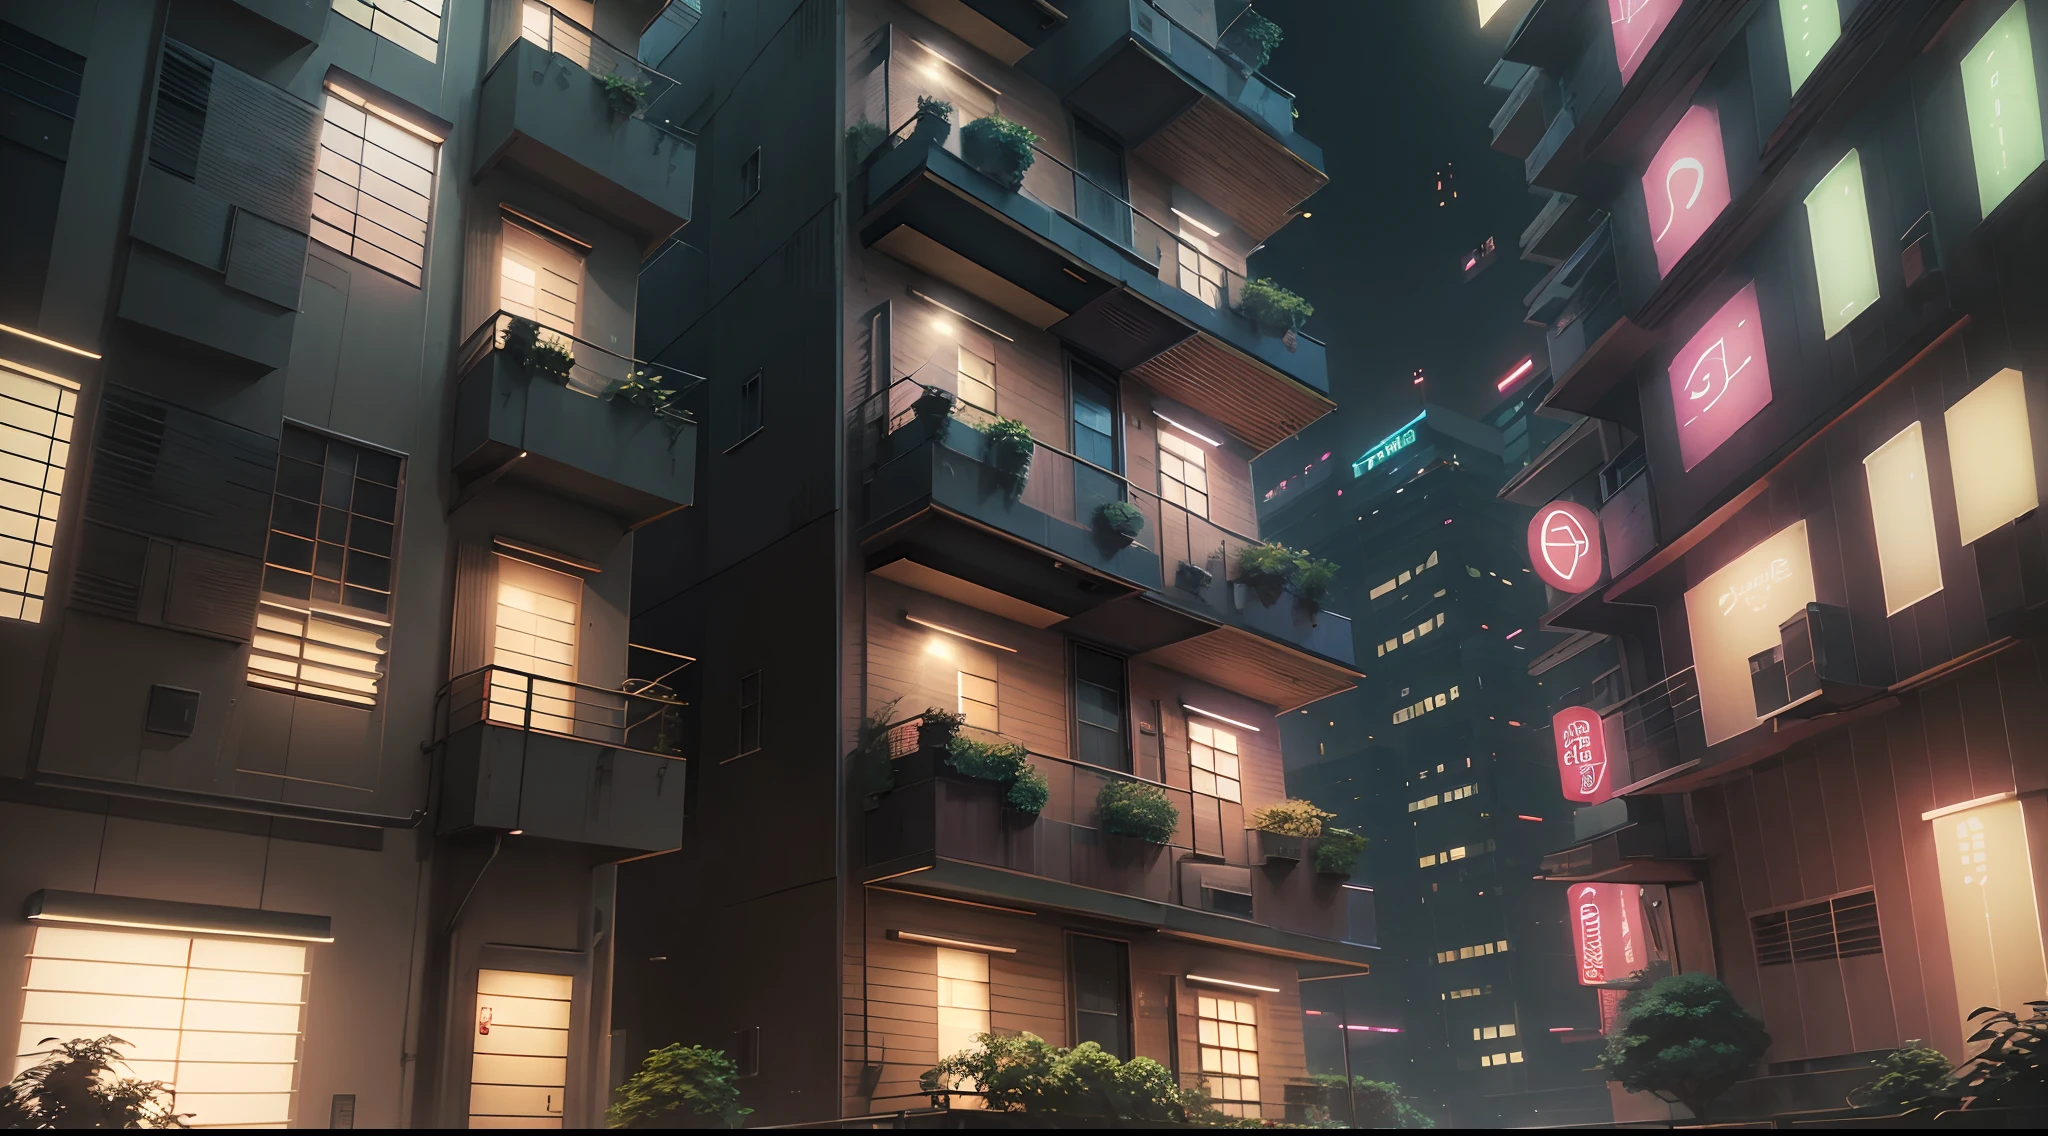 日本市中心的一套公寓, 面对建筑物, 城市街道周围的绿化, 高的建筑, 症状, 暖灯, 表示非常特殊的公寓. (最好的质量,4k,8千,高分辨率,杰作:1.2), 极其详细, (实际的,photo实际的,photo-实际的:1.37), 人类发展报告, 超高清, 清晰聚焦, 专业的, 鲜艳的颜色, 景观, 日本动画片, 摄影, (现代的, 传统的) 风格, (冷静的, 丰富多彩的) 调色板, (环境舒缓) 灯光, 非常适合缩略图